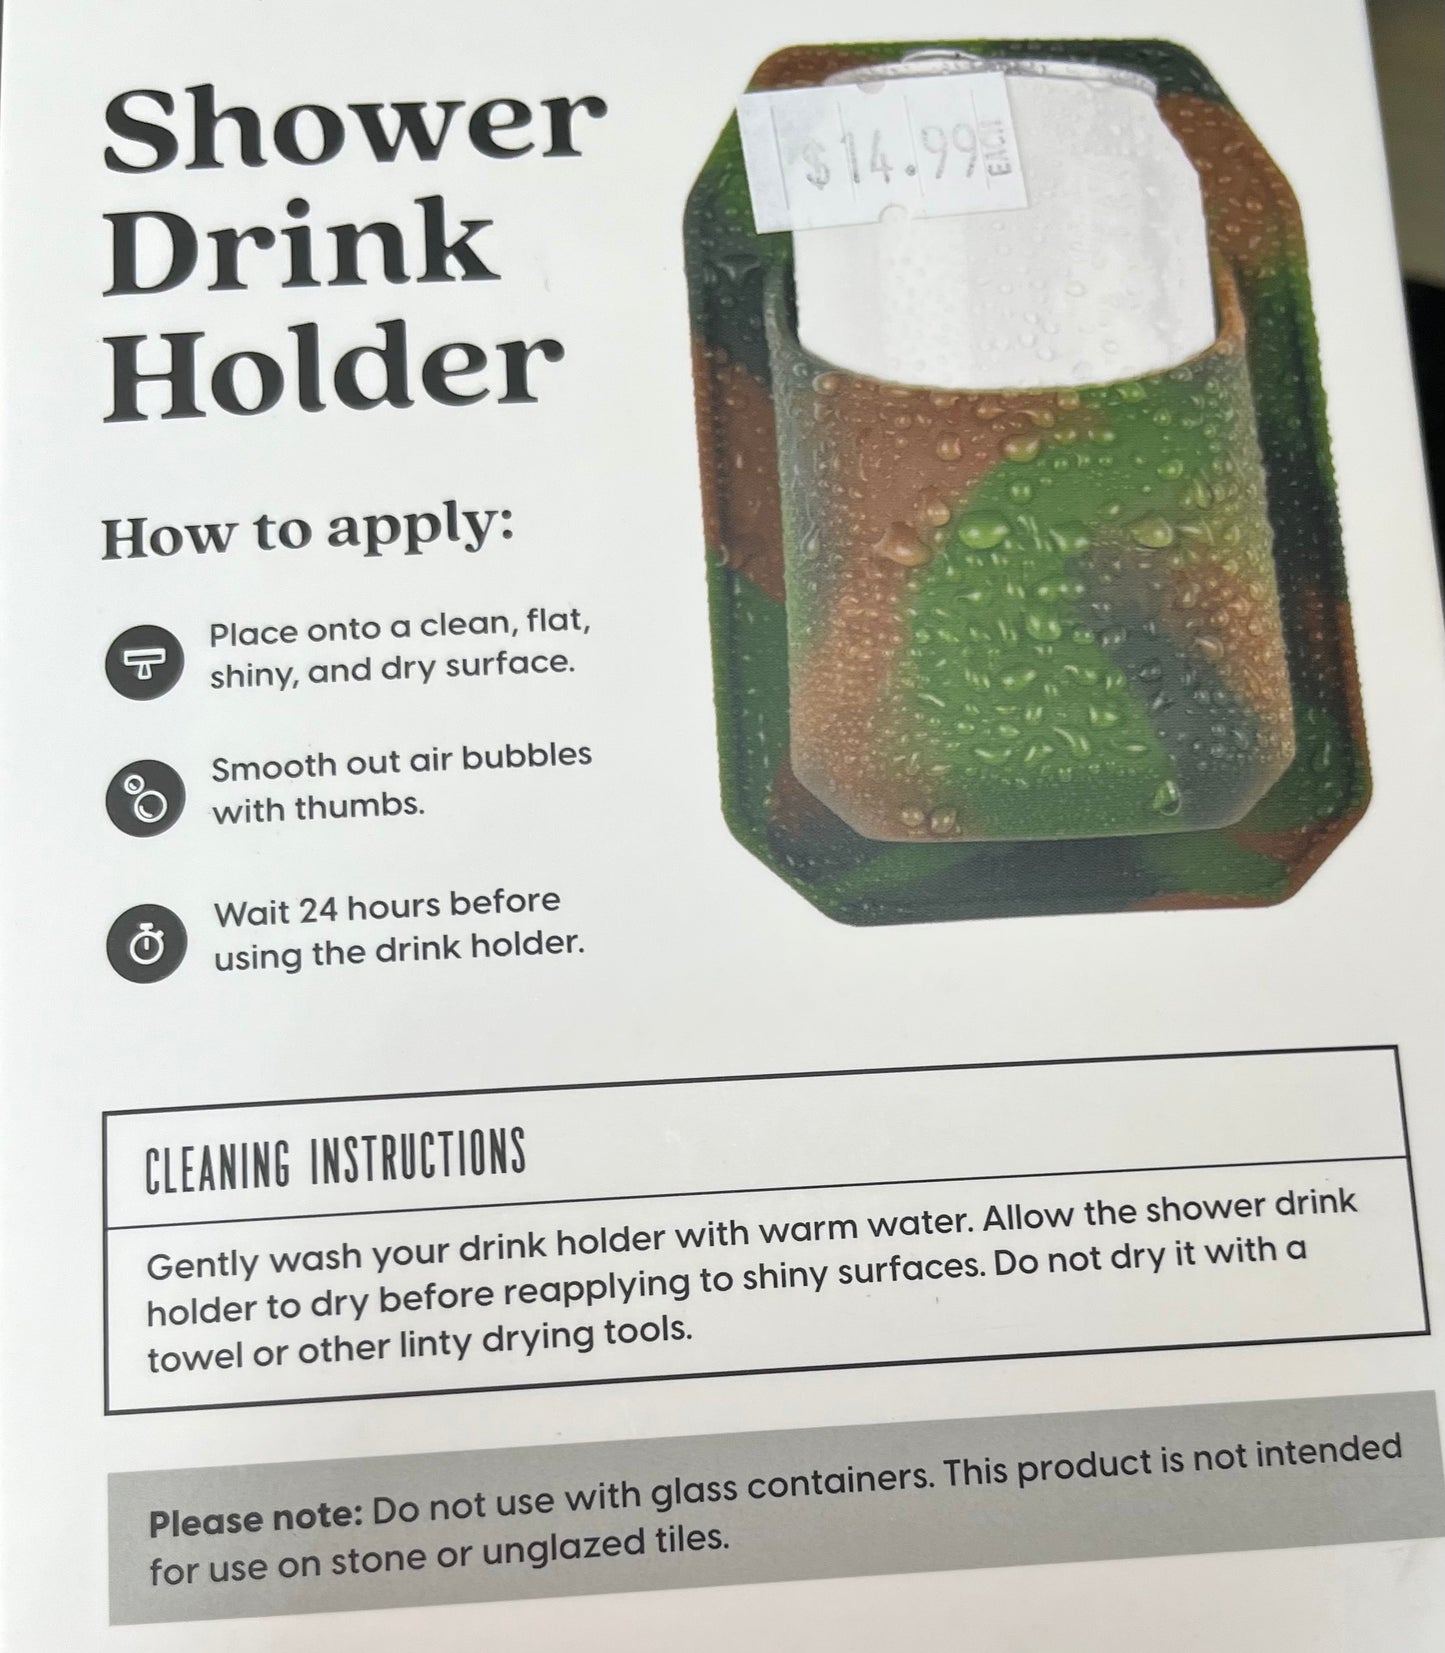 Shower Drink Holder